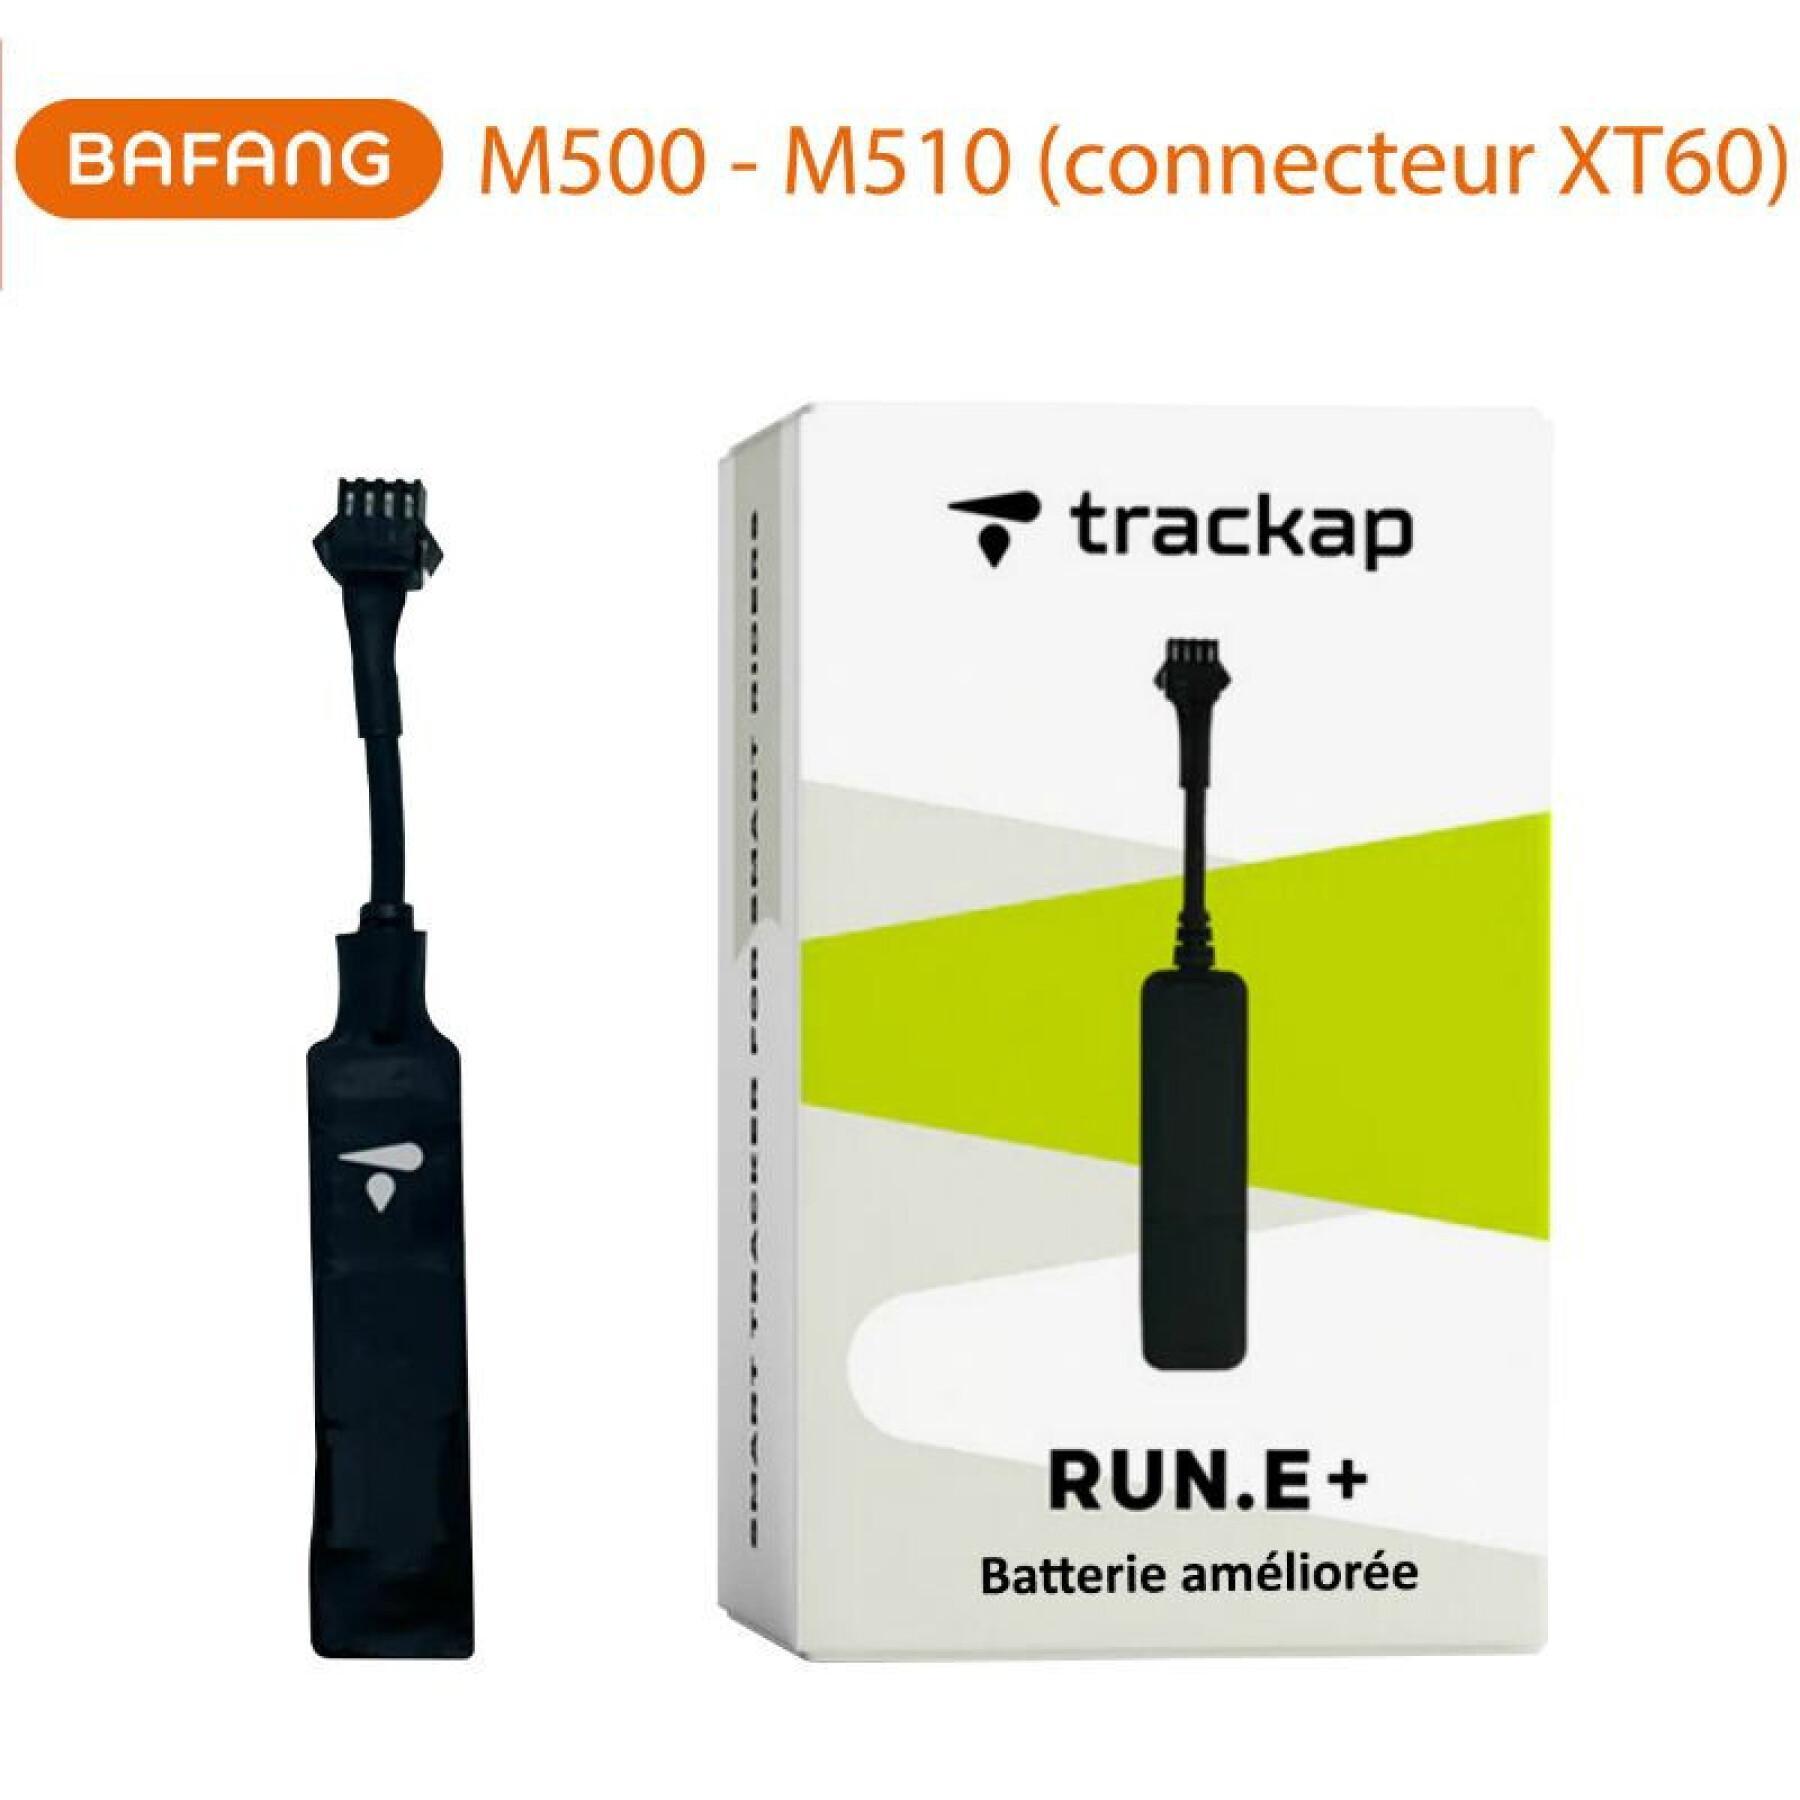 Tracker - tracer - security device gps compatible connecteur avec 1 an abonnement base Trackap Run E+ 2023 Bafang M500-510 Xt60